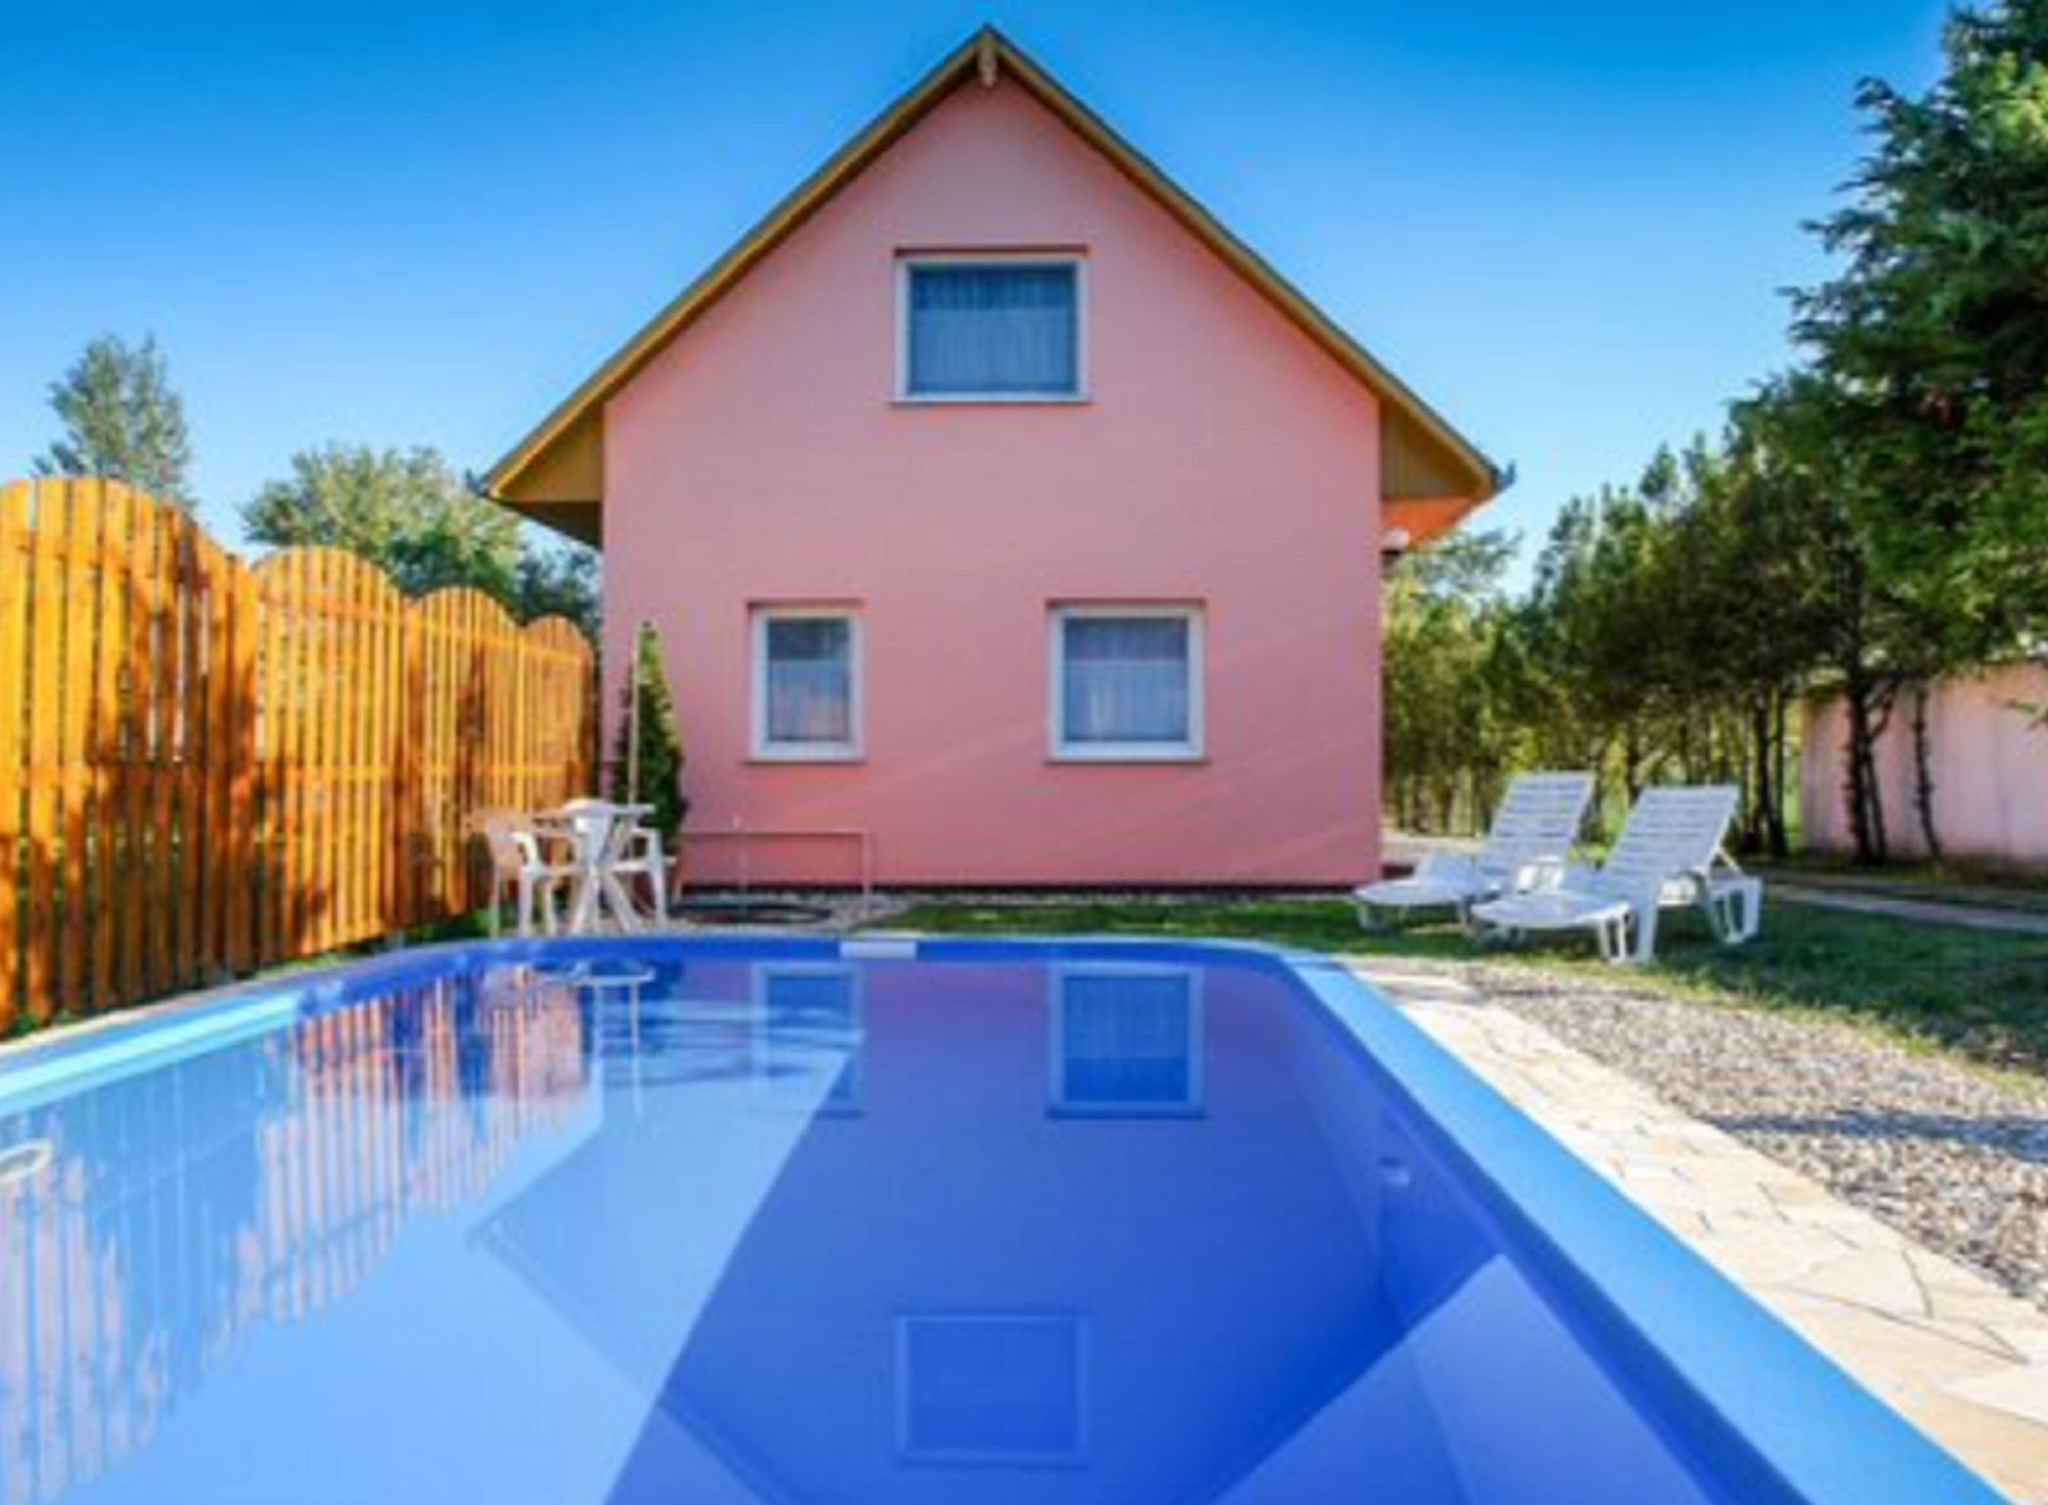 Ferienhaus mit Pool und Gartenpavillon   Balatonfenyves